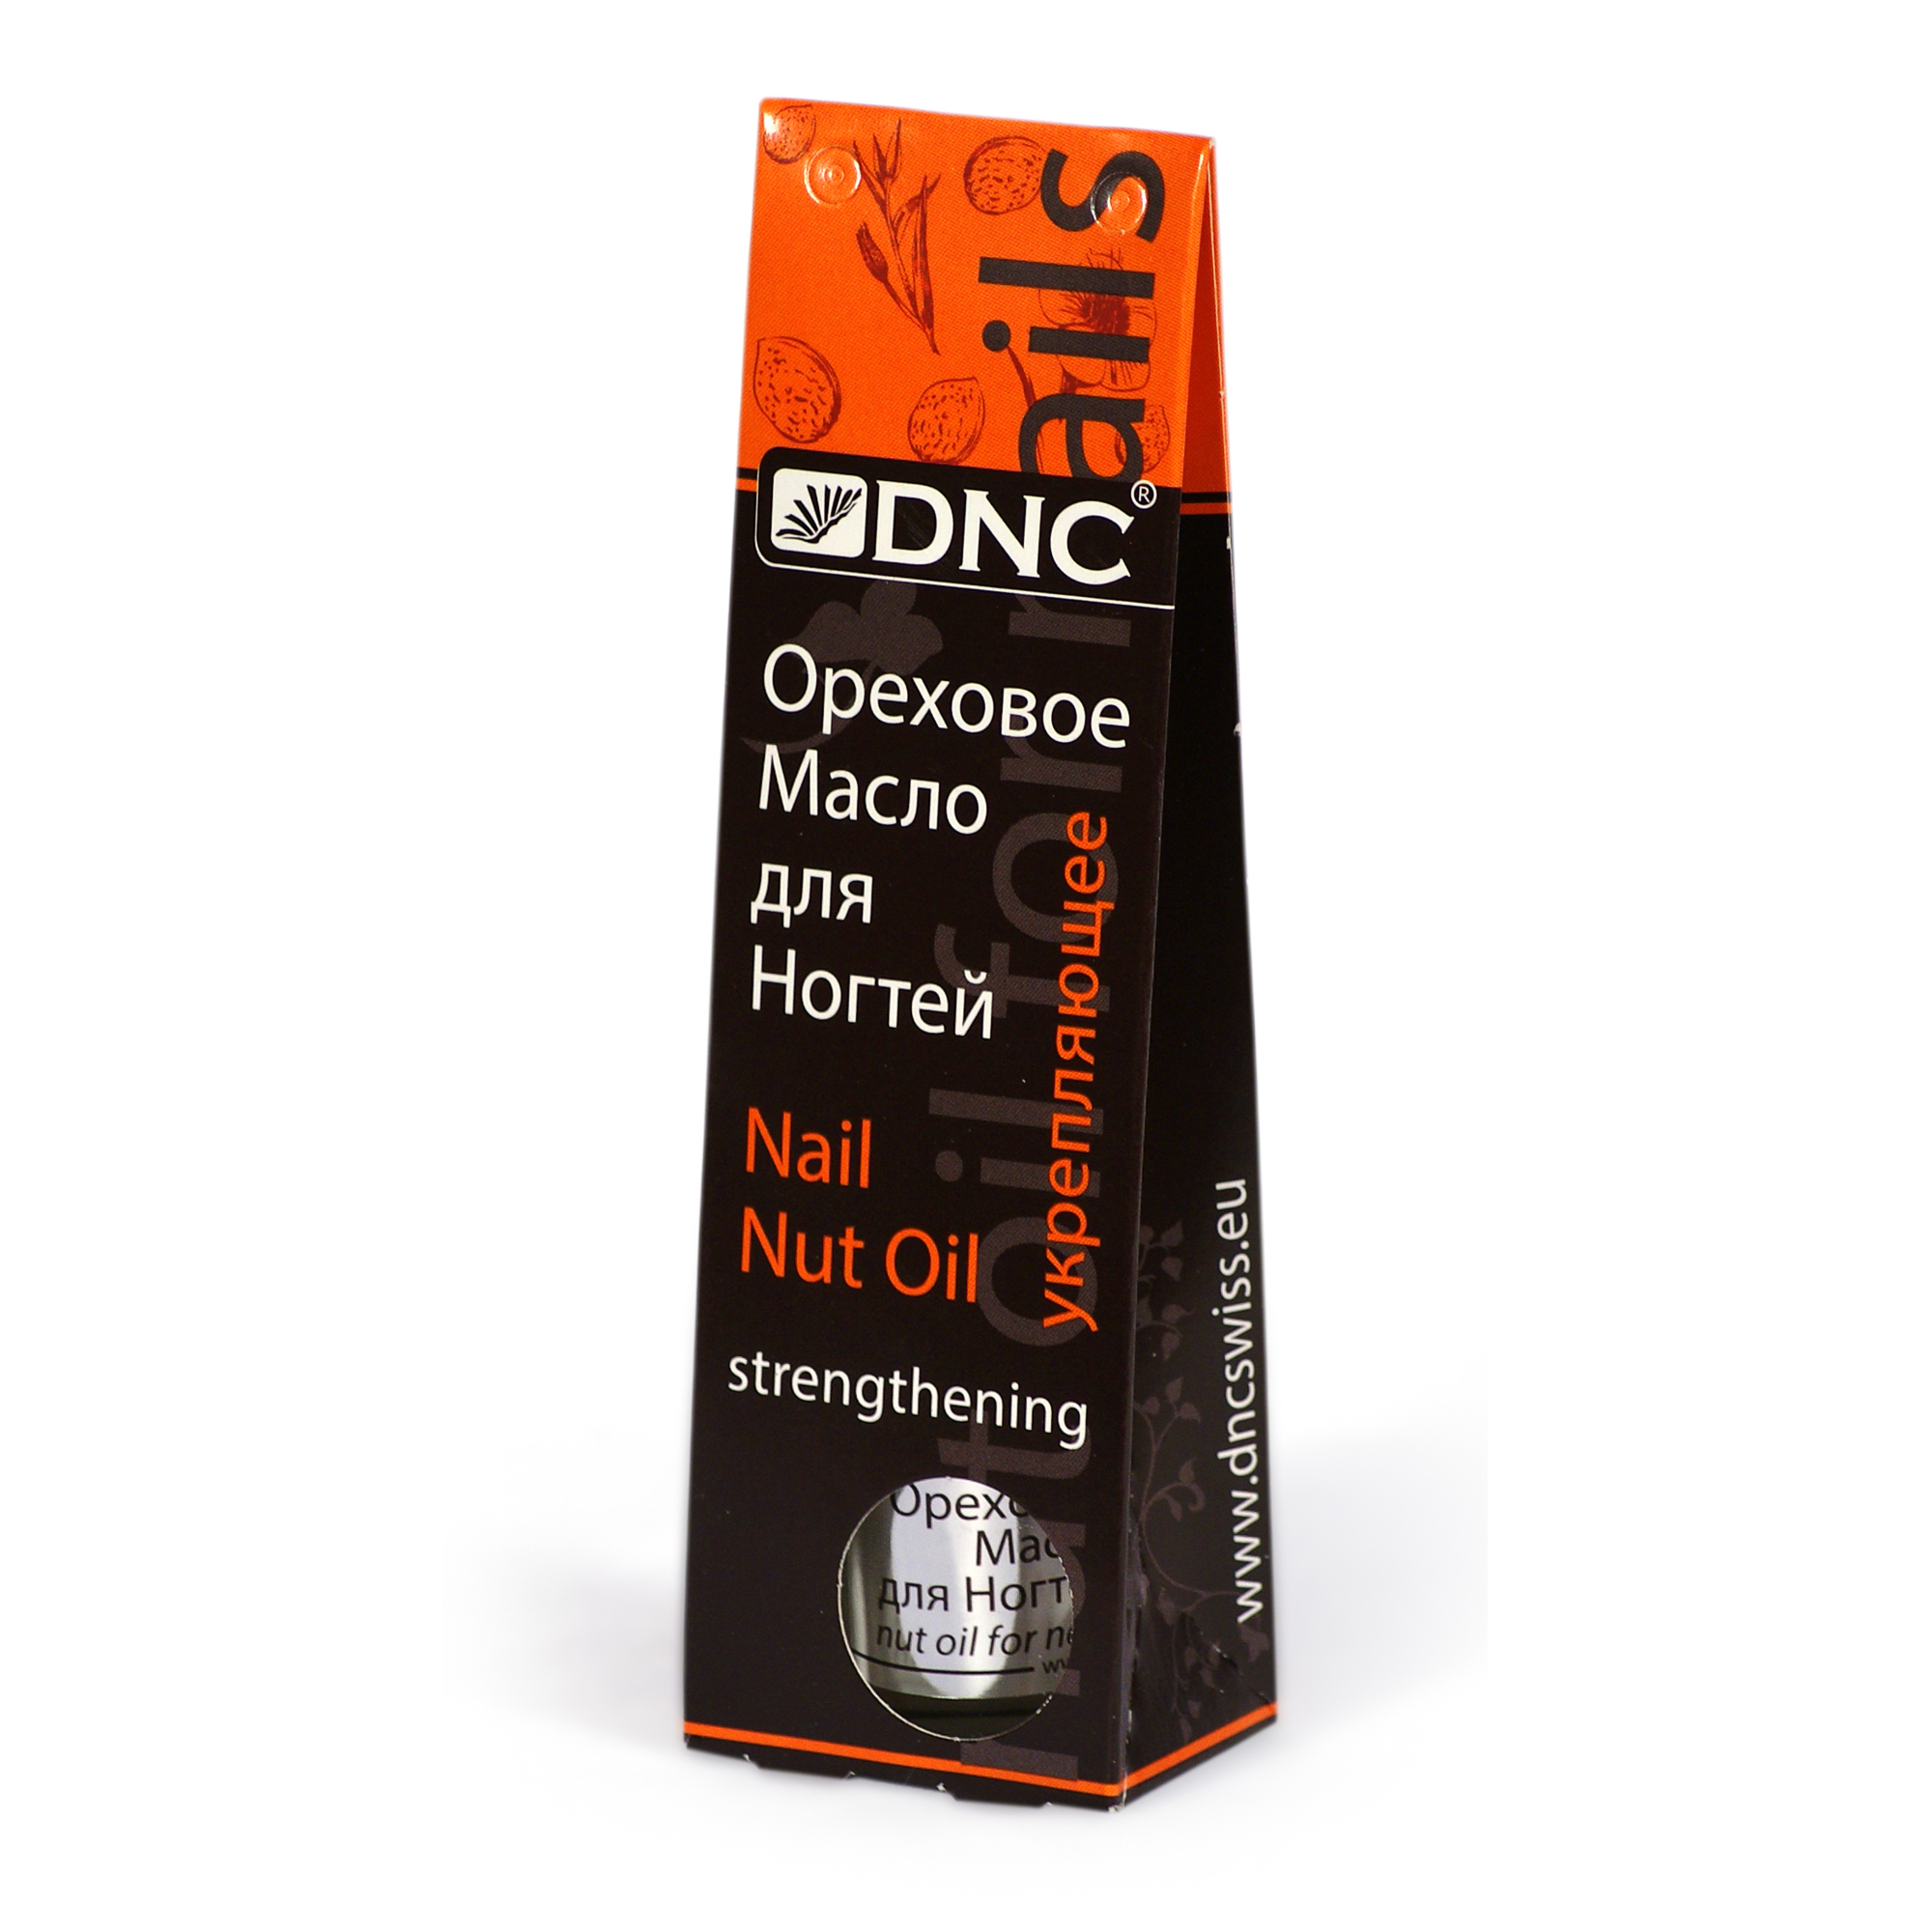 DNC Ореховое масло для ногтей , укрепляющее, 6 мл - фото 2